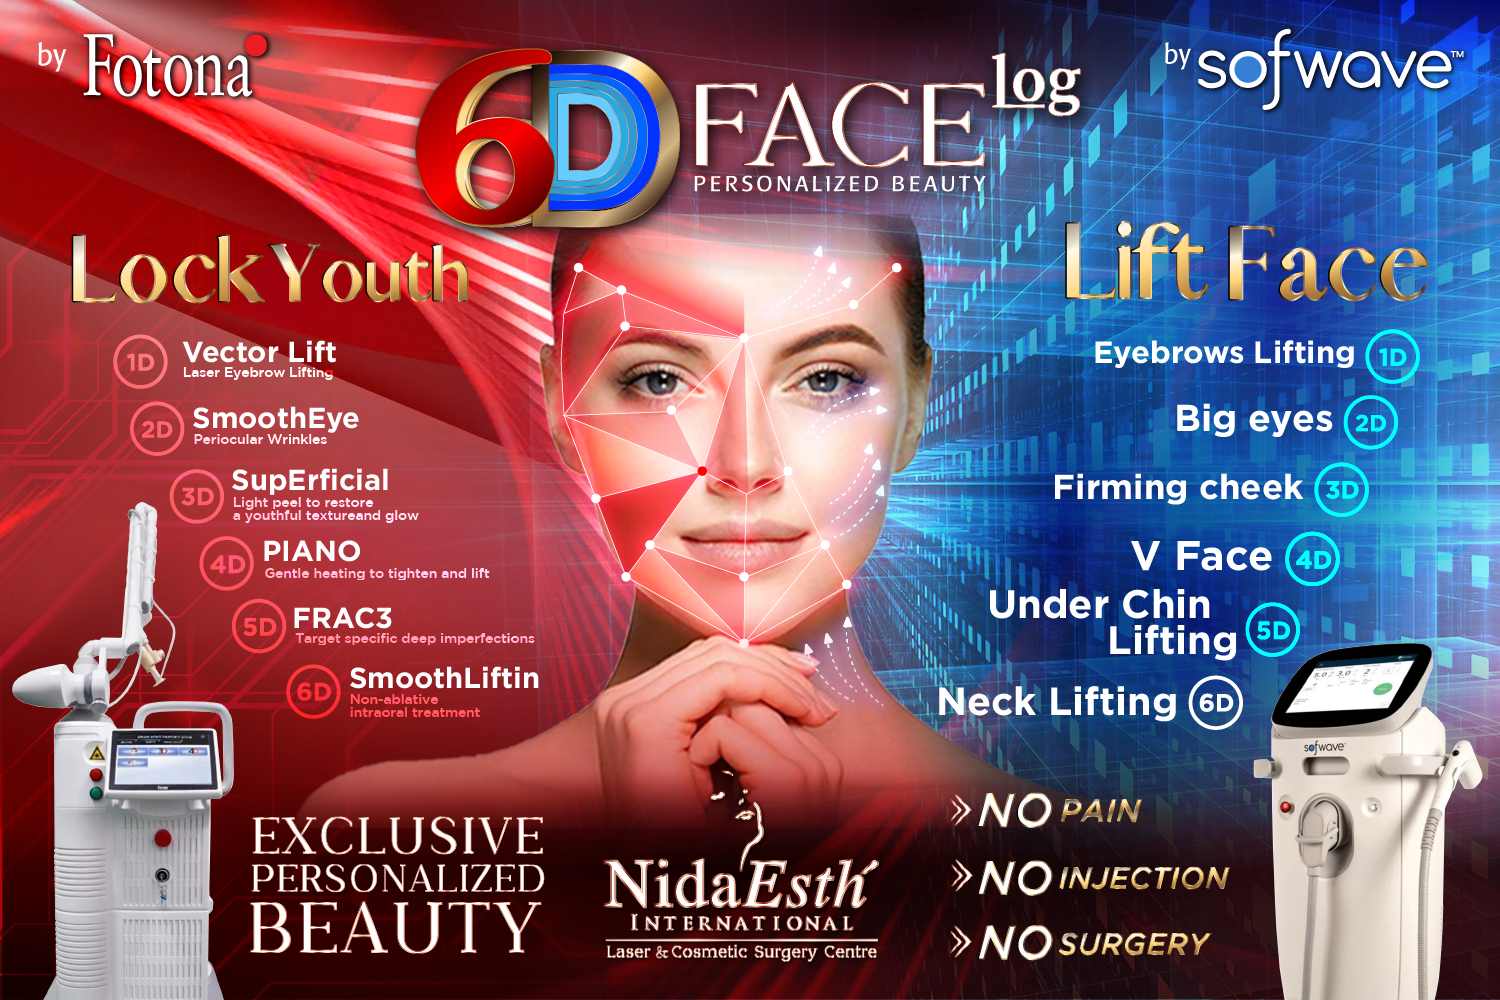 6D Face log.